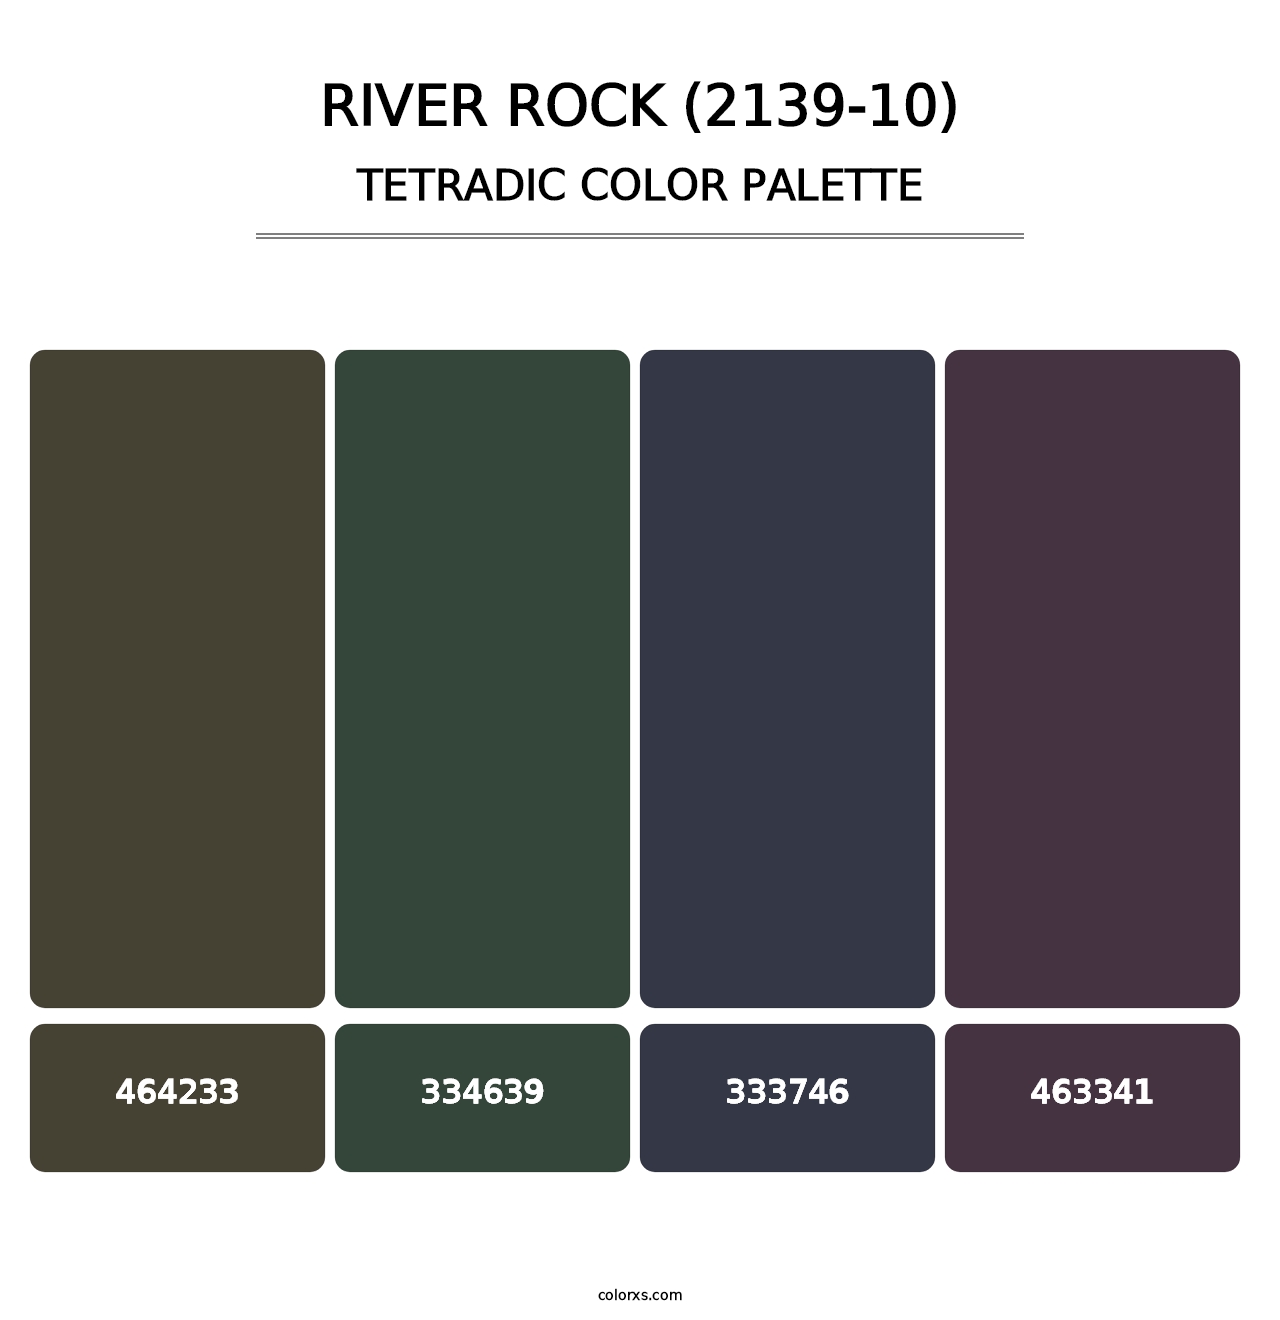 River Rock (2139-10) - Tetradic Color Palette